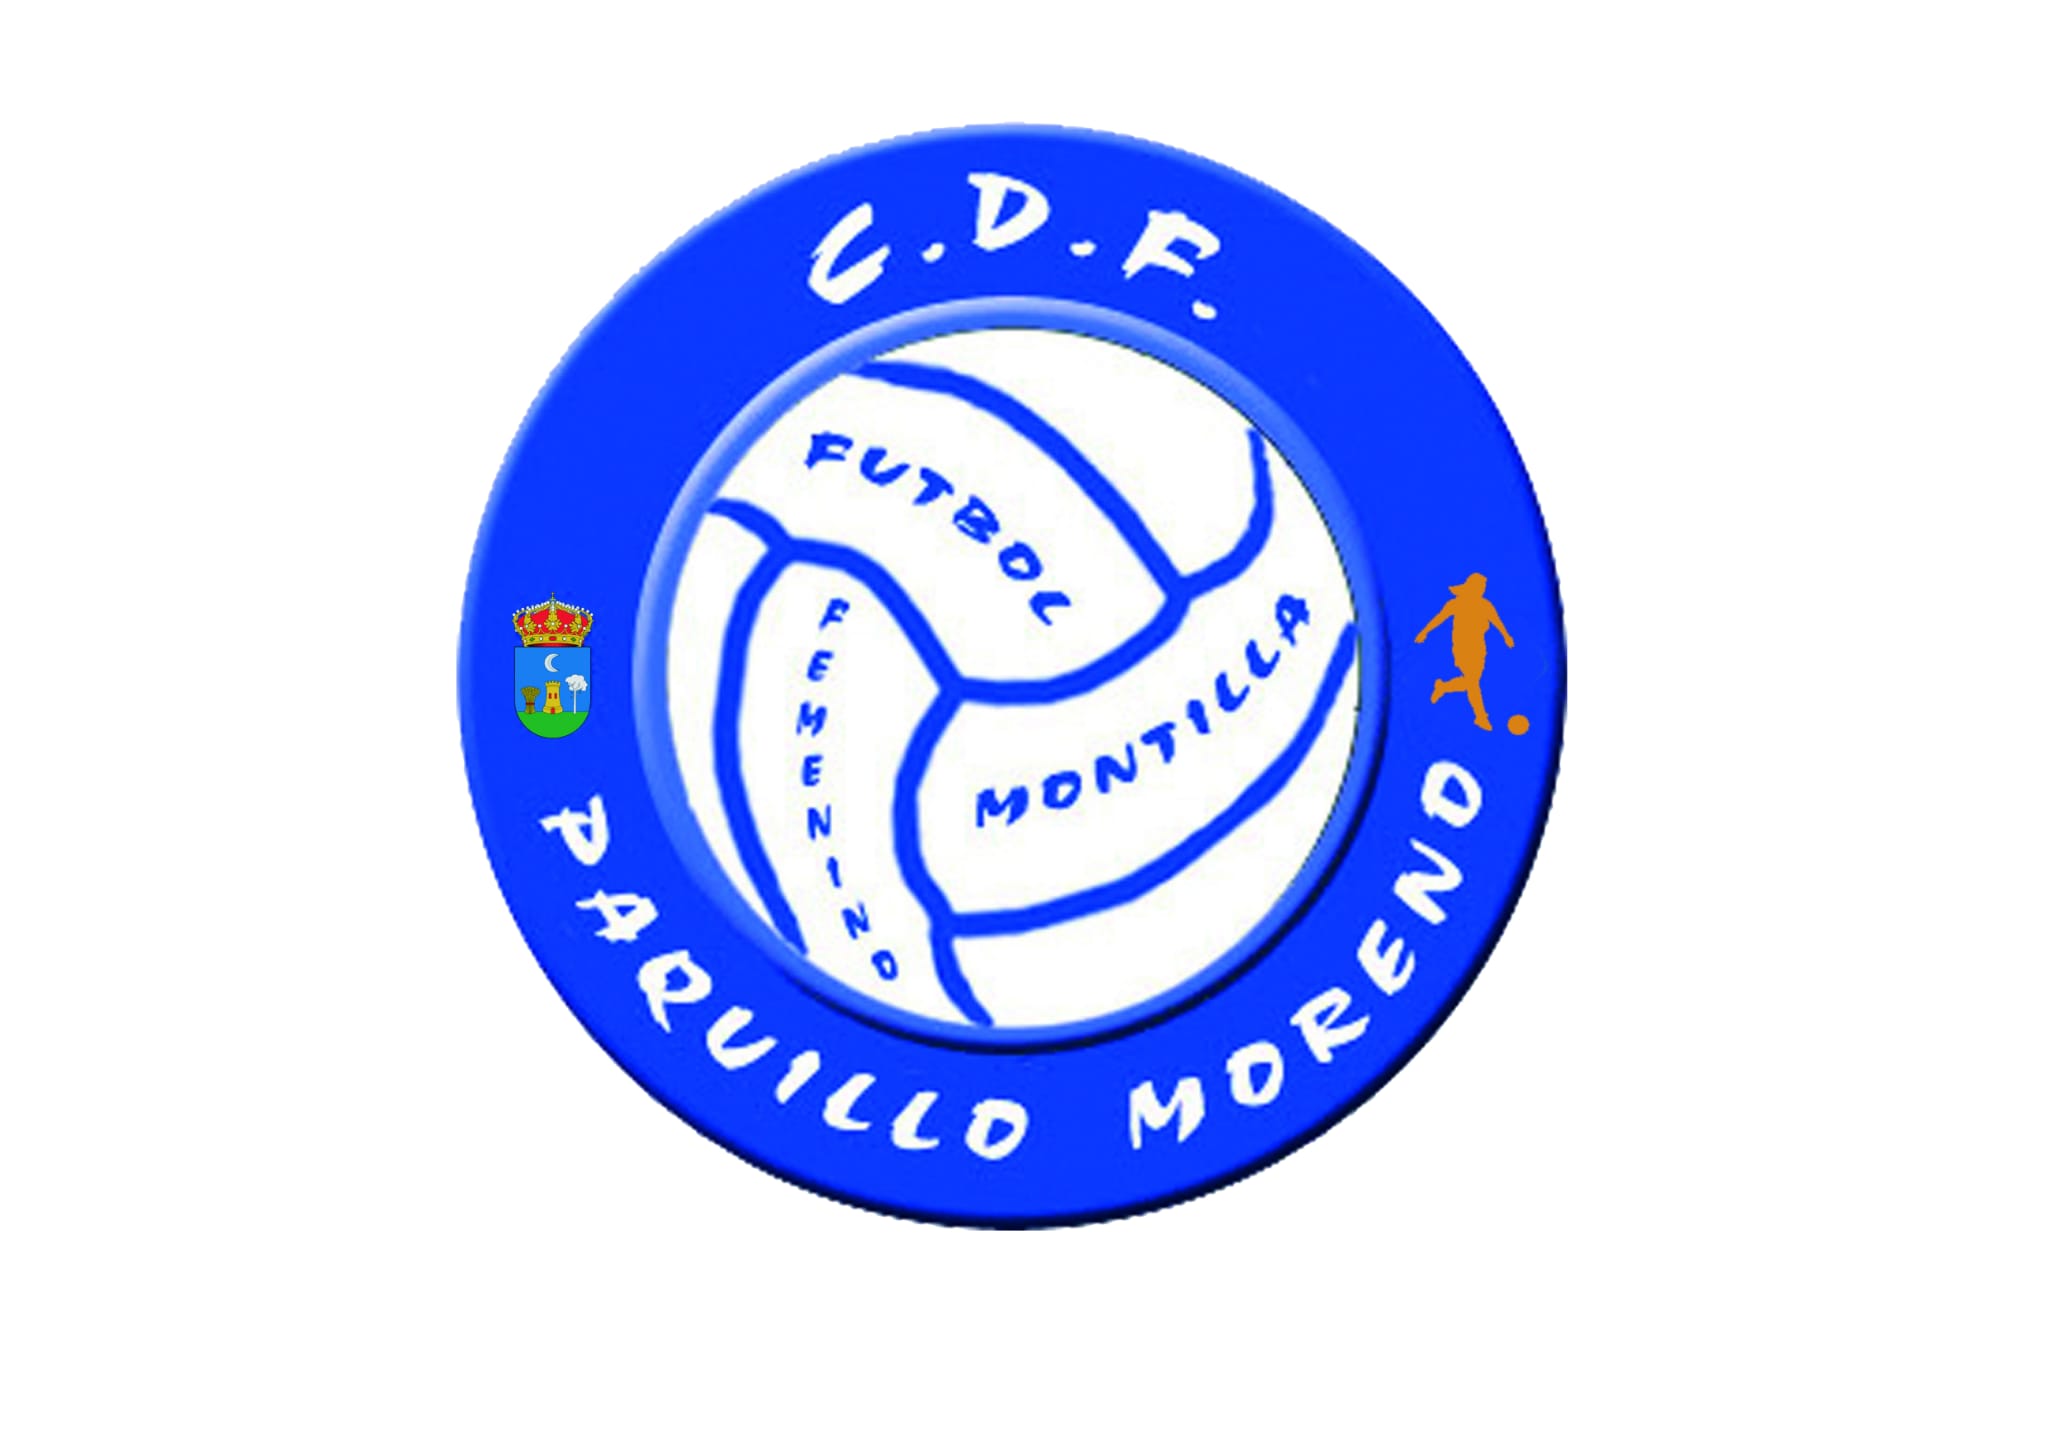 C.D.F. Paquillo Moreno